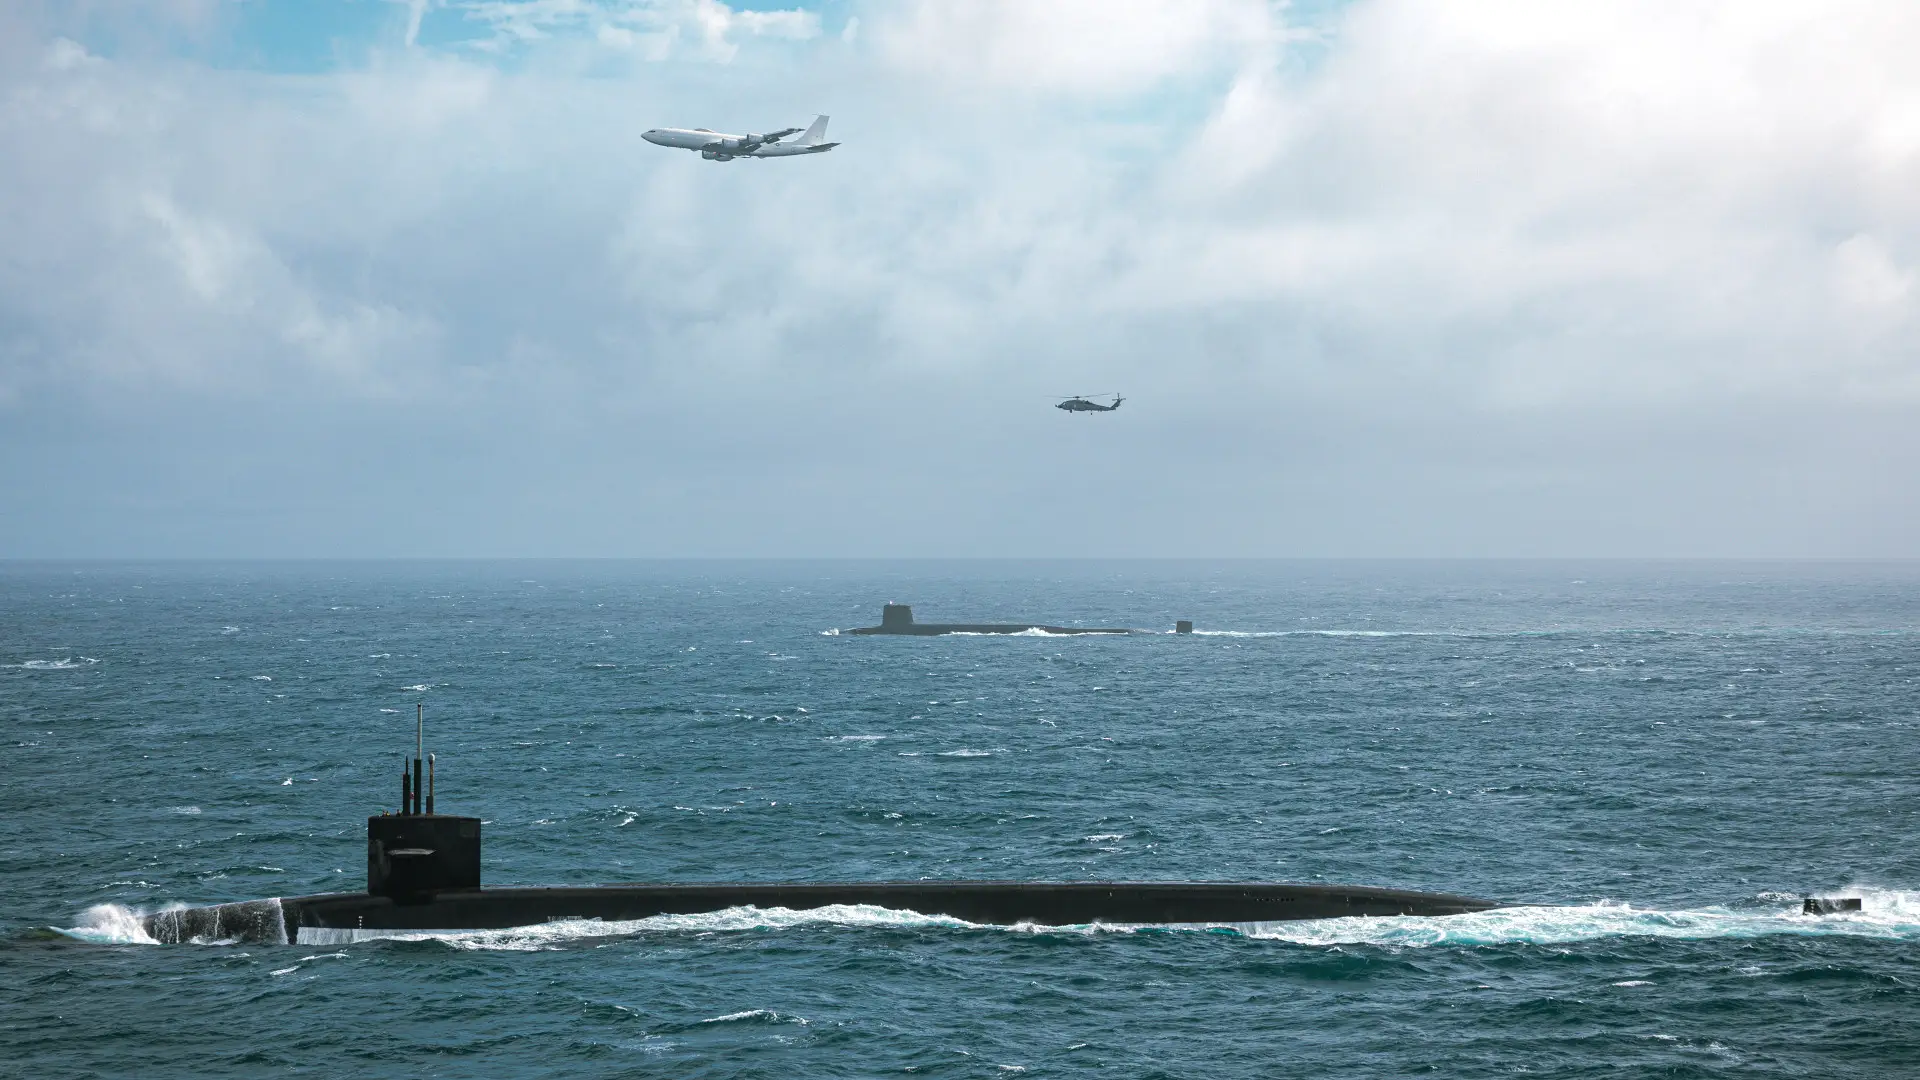 USA i Wielka Brytania przeprowadziły ćwiczenia z okrętami podwodnymi USS Tennessee i Vanguard, które przenoszą rakiety Trident II z bronią jądrową - nad nimi latał samolot zagłady Boeing E-6B Mercury